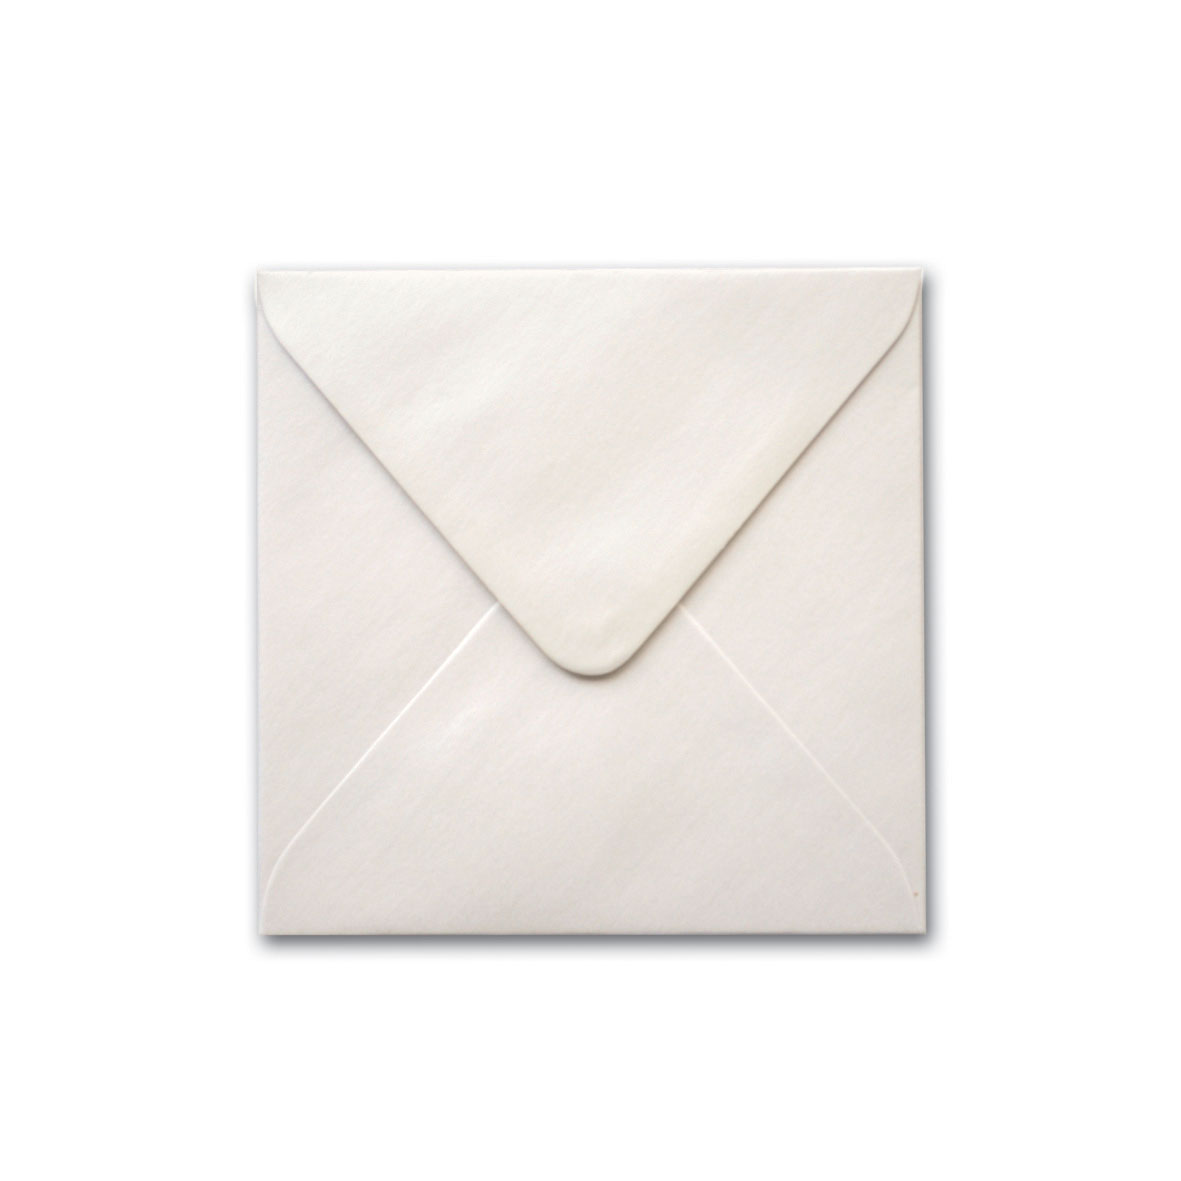 150mm Square StarDream Quartz Envelope